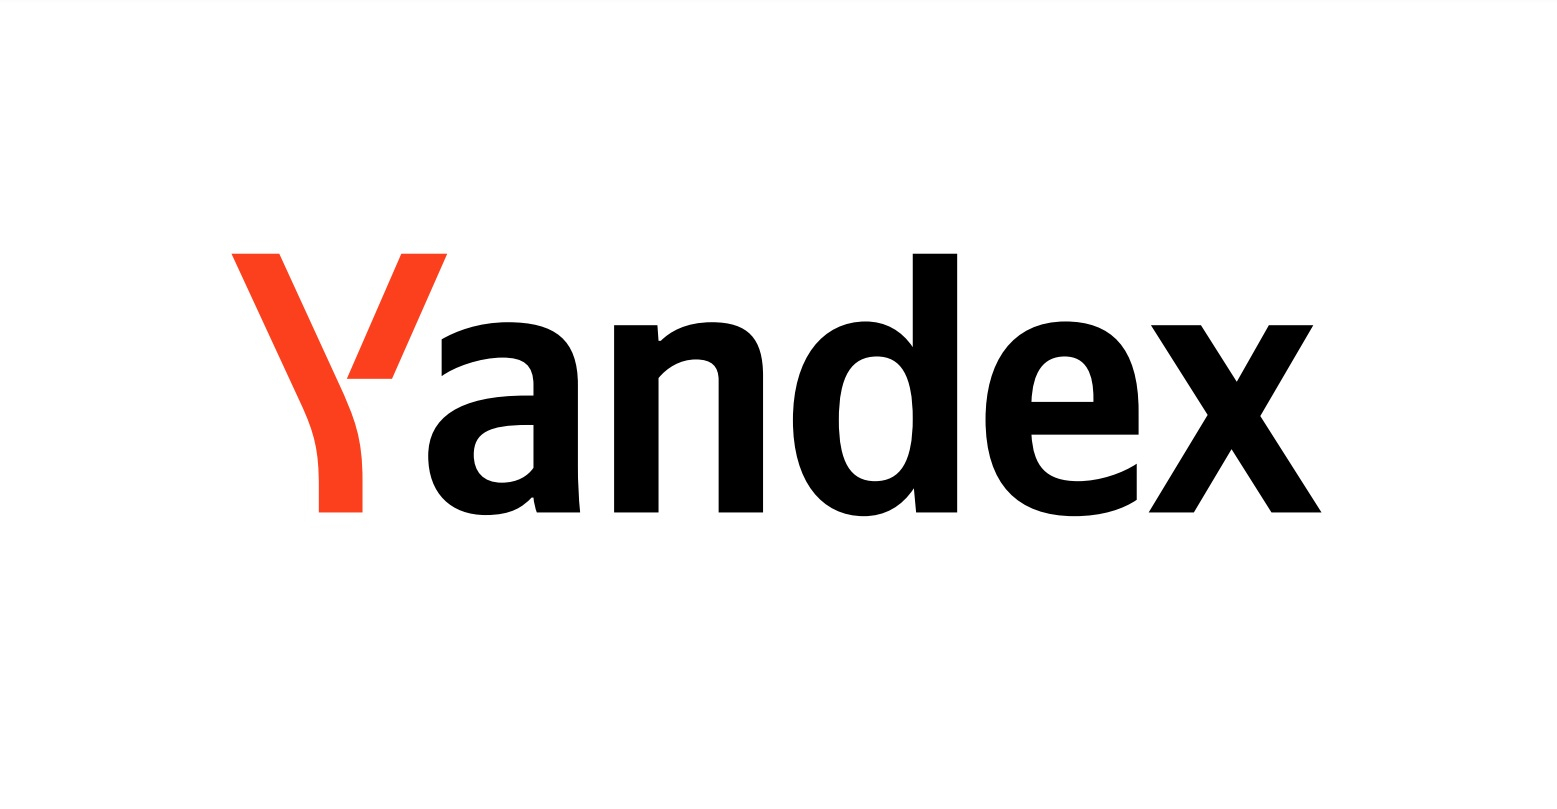 Обои на главную страницу Яндекса